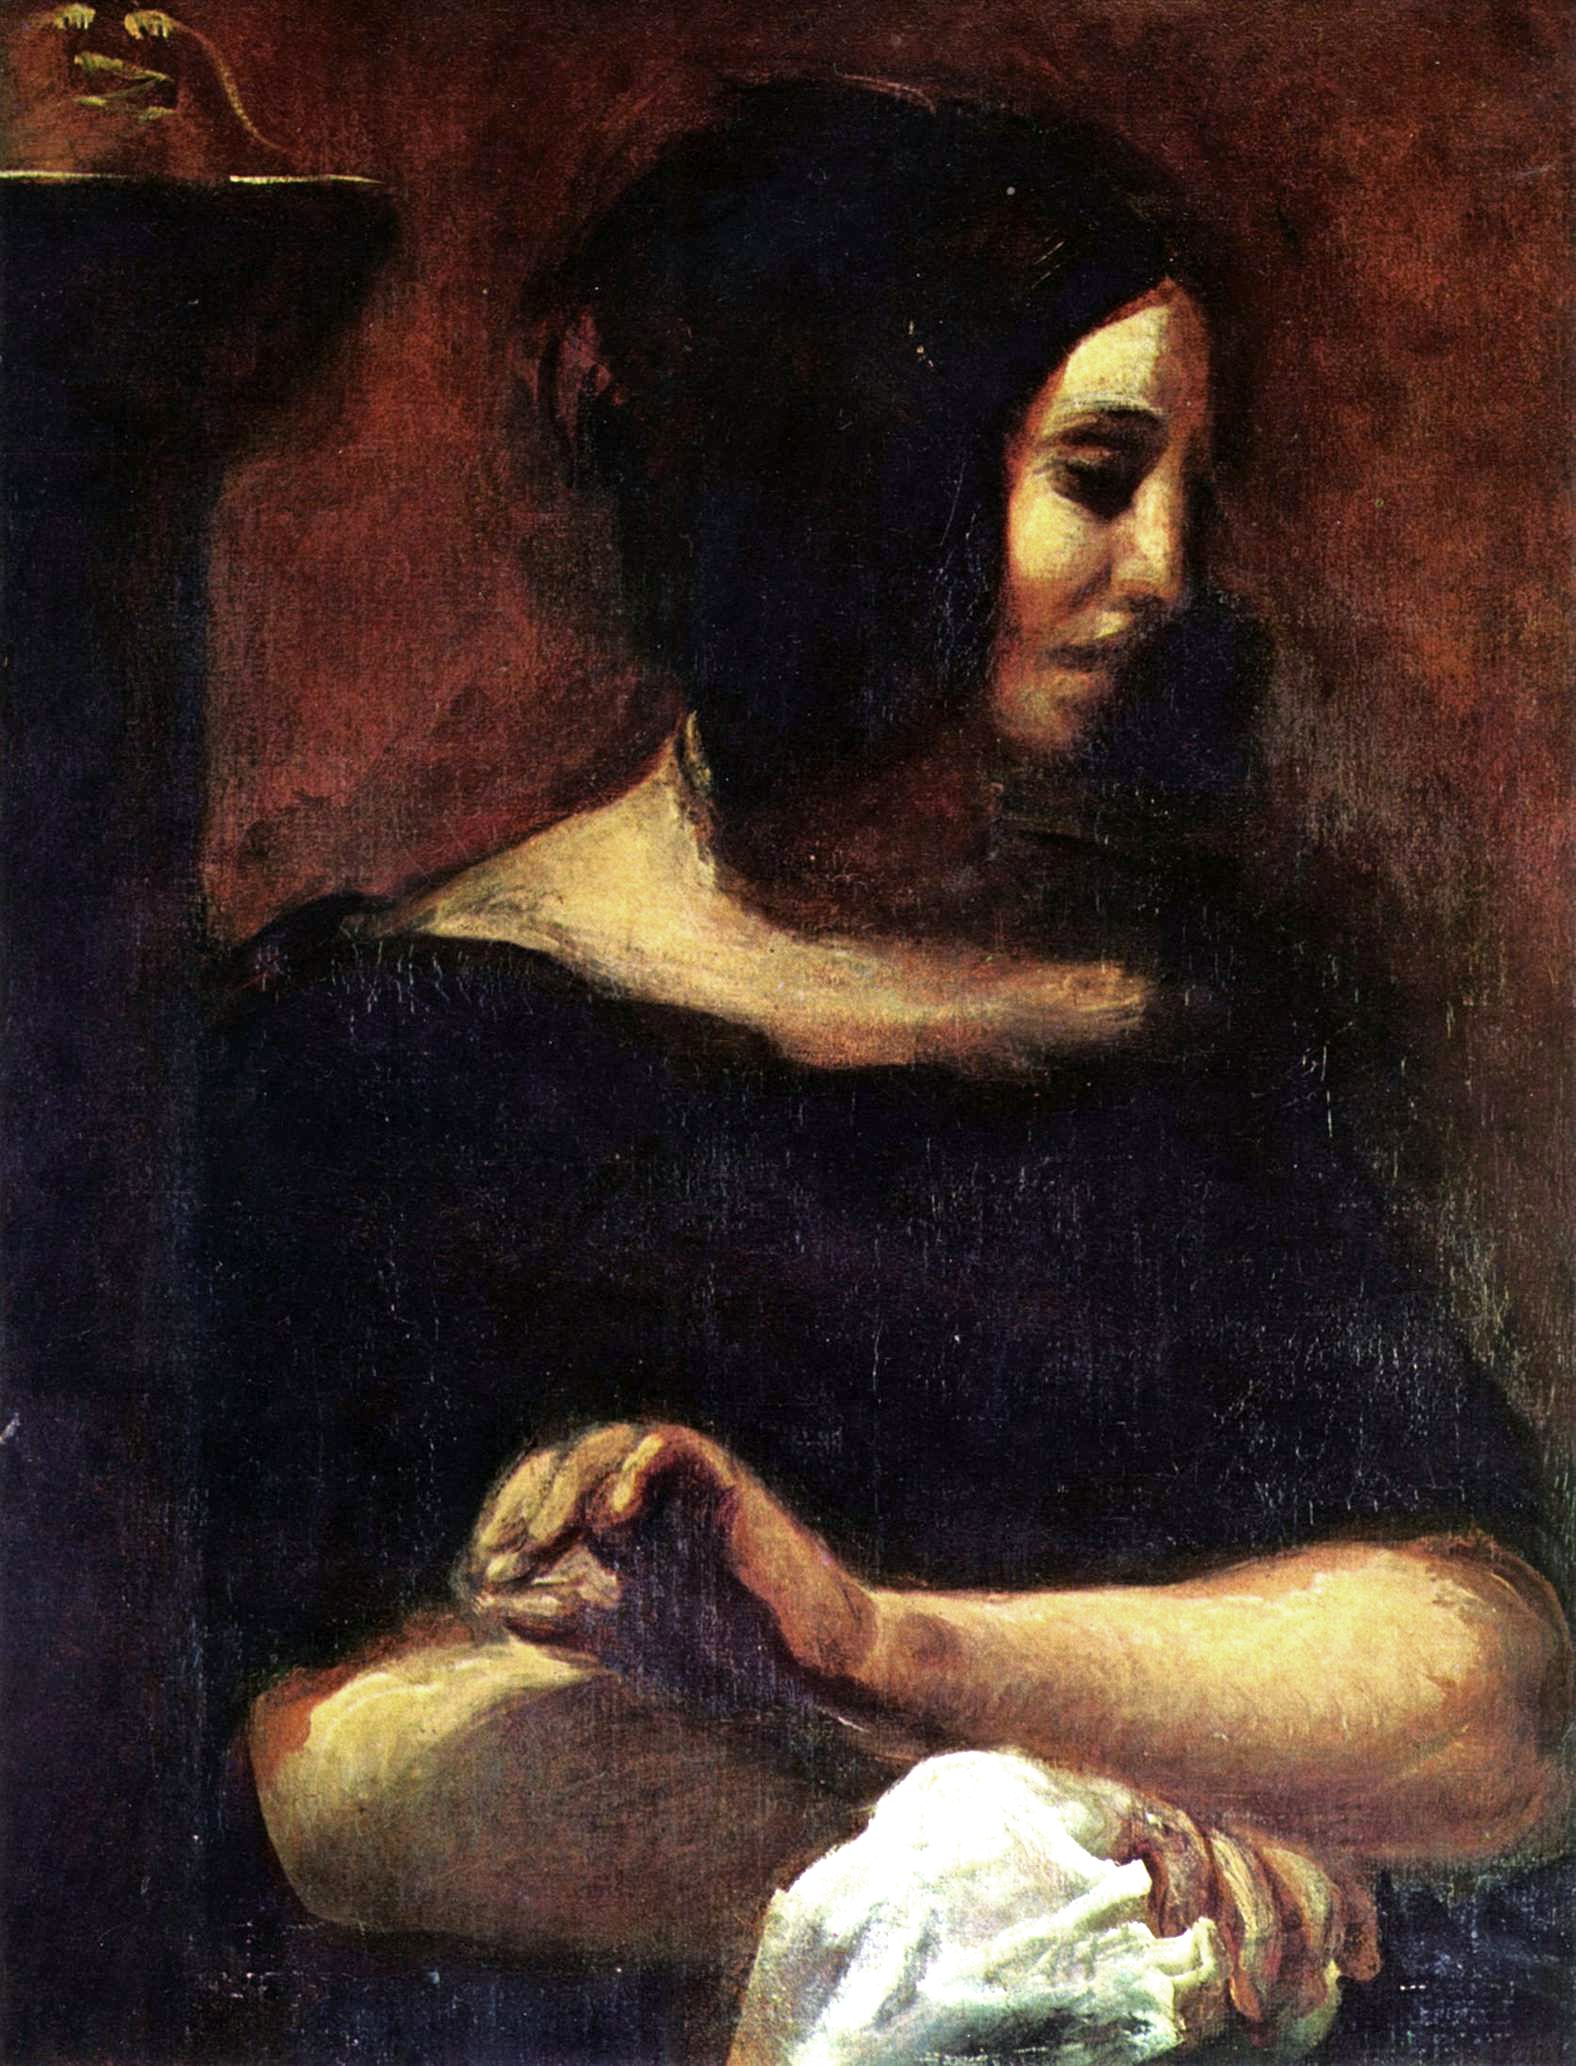 Жорж Санд by Эже́н Делакруа́ - 1838 - 81 × 56 см 